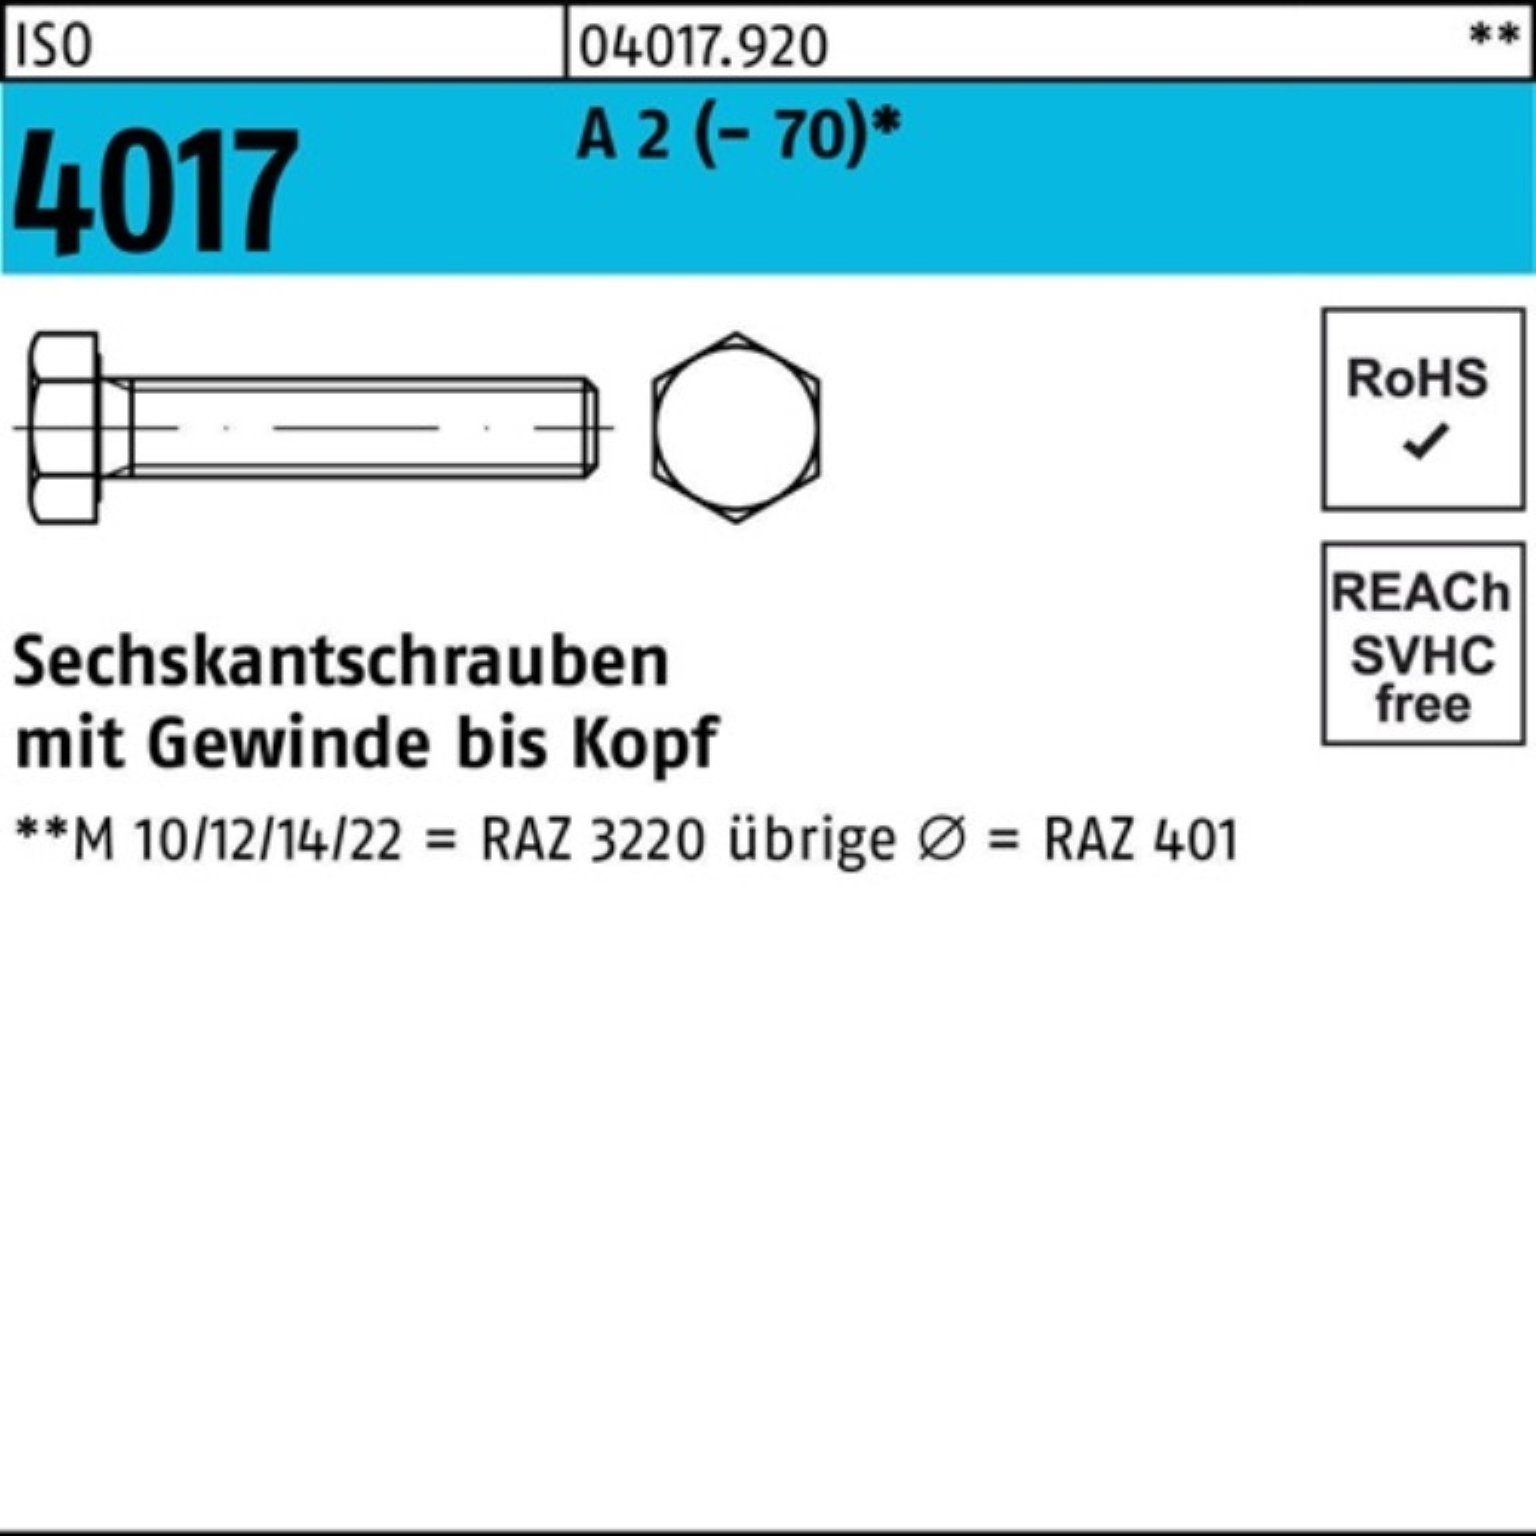 Sechskantschraube Pack VG 1 100er Bufab ISO (70) 2 100 Sechskantschraube M36x 4017 A Stück